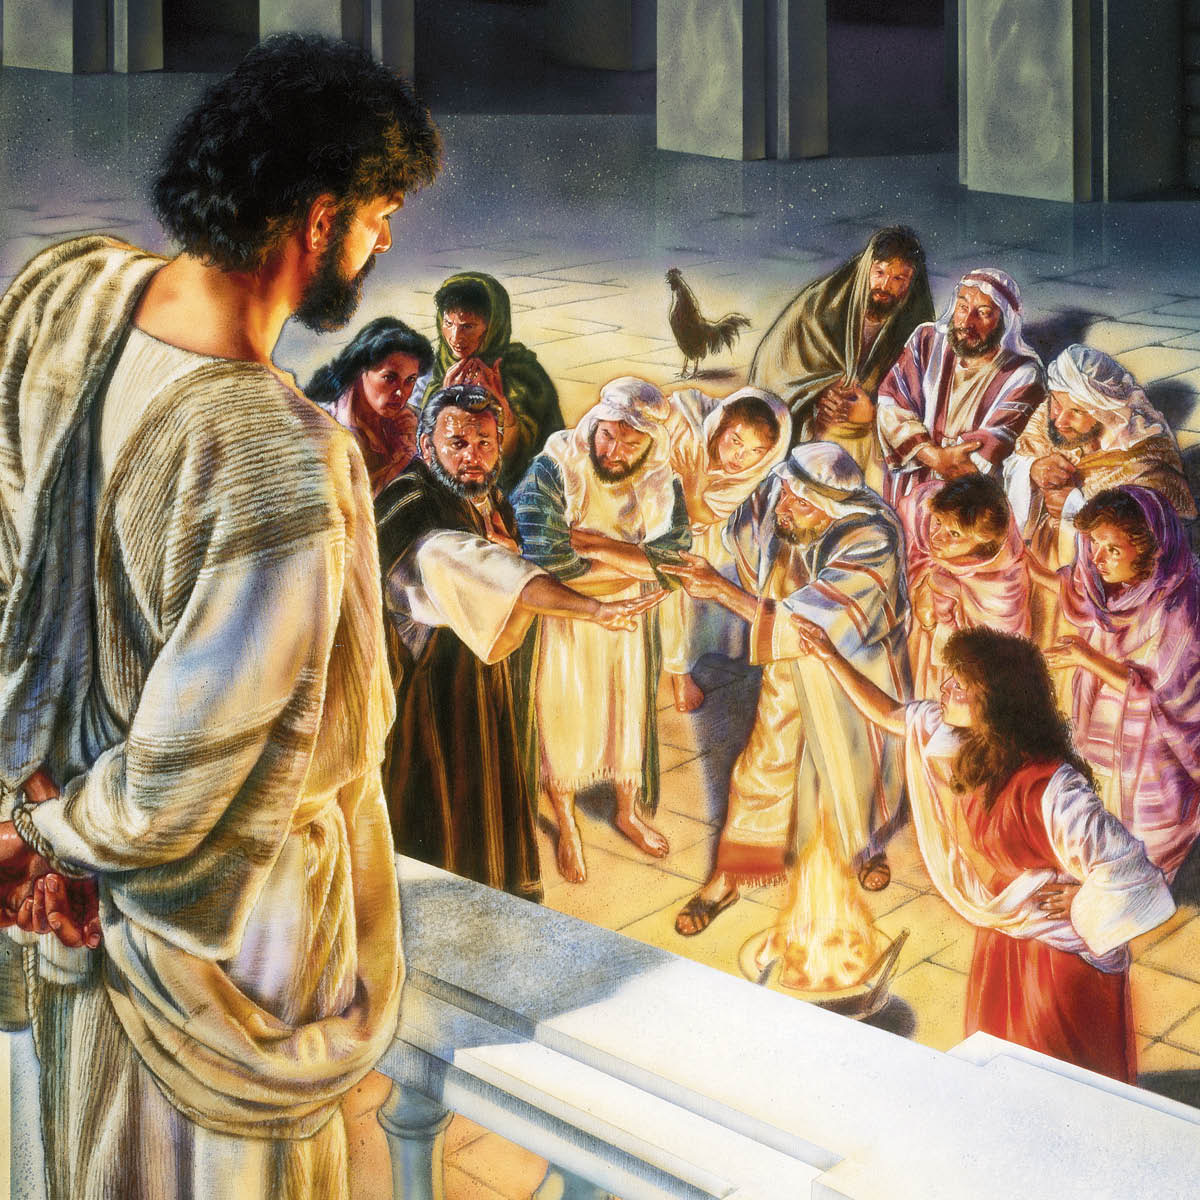 Jezus patrzy z balkonu, jak Piotr zapiera się go przed ludźmi zebranymi na dziedzińcu.